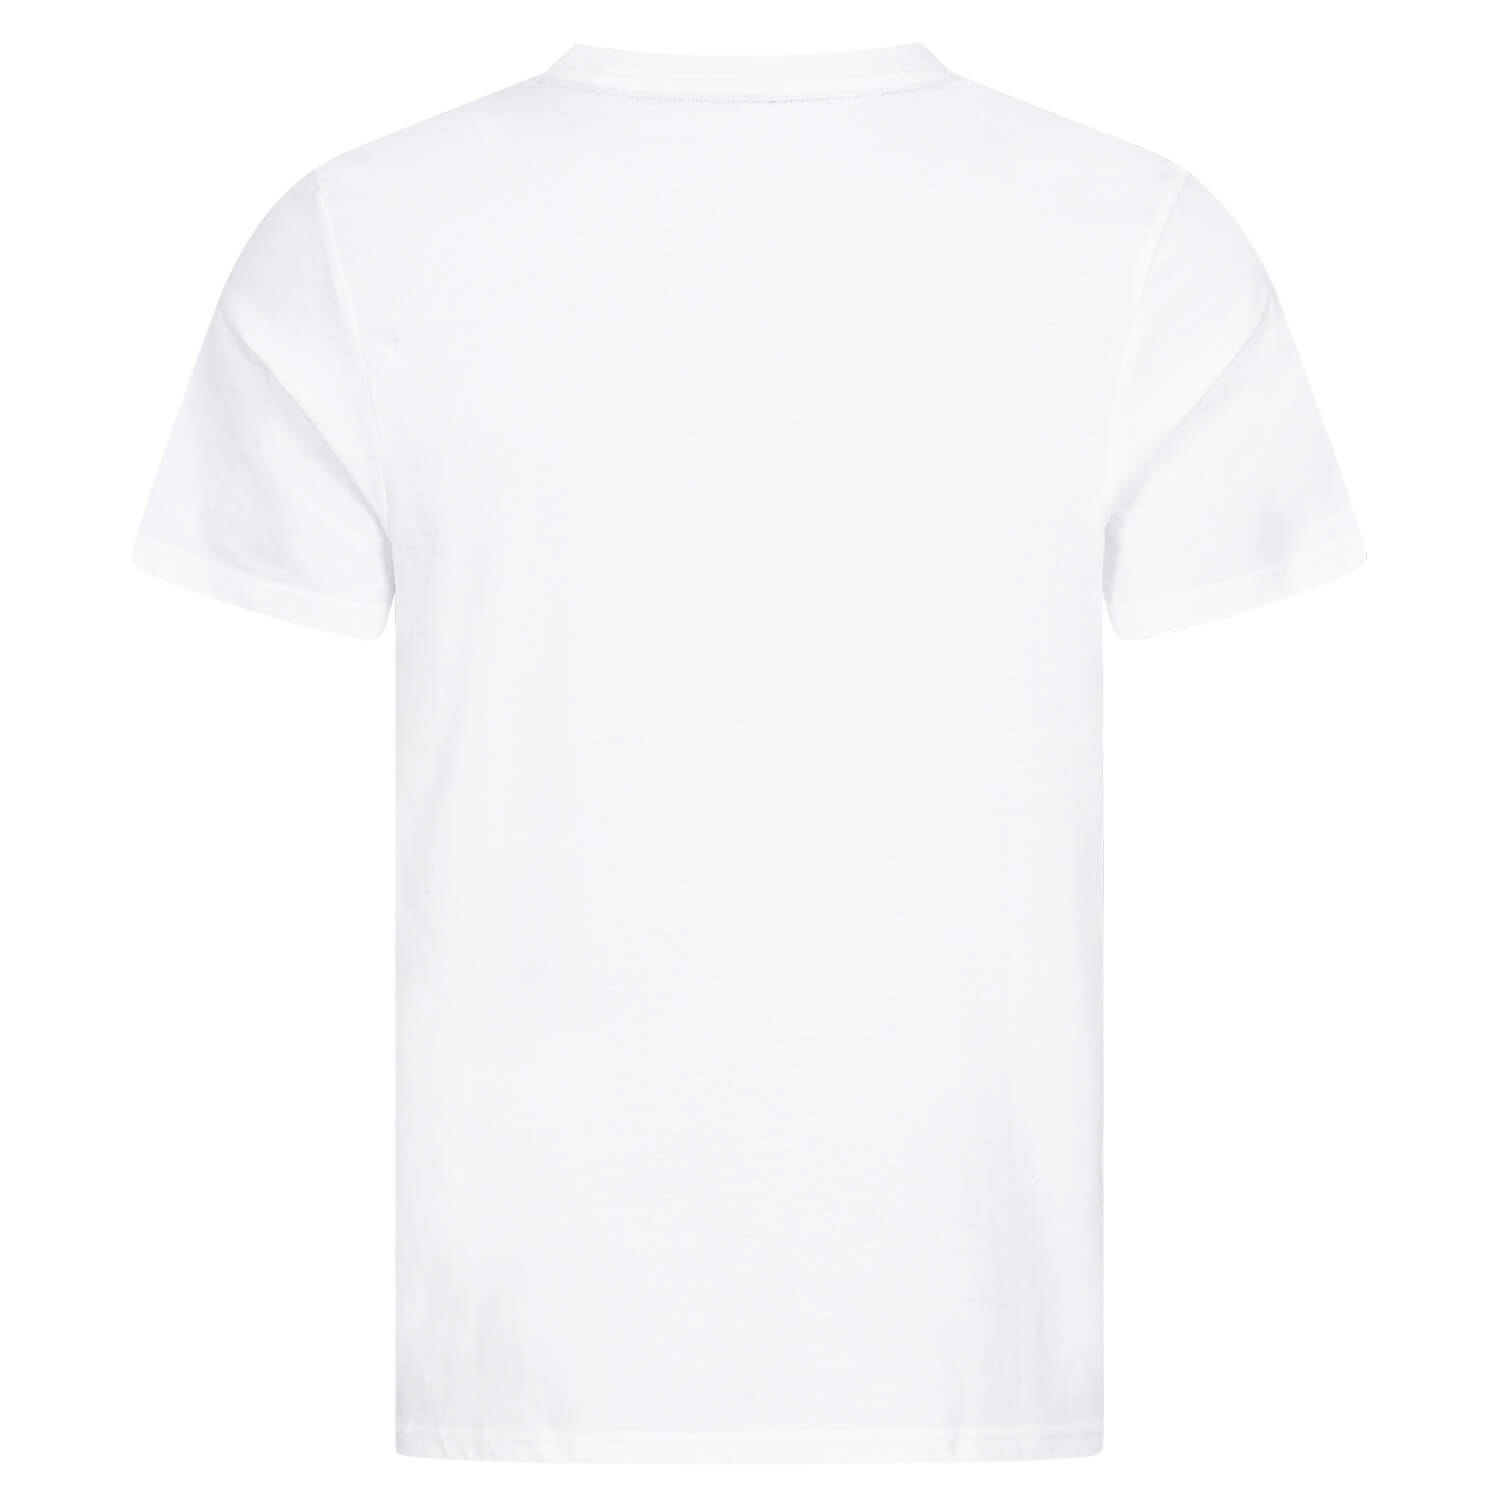 Bild 2: T-Shirt White Badge